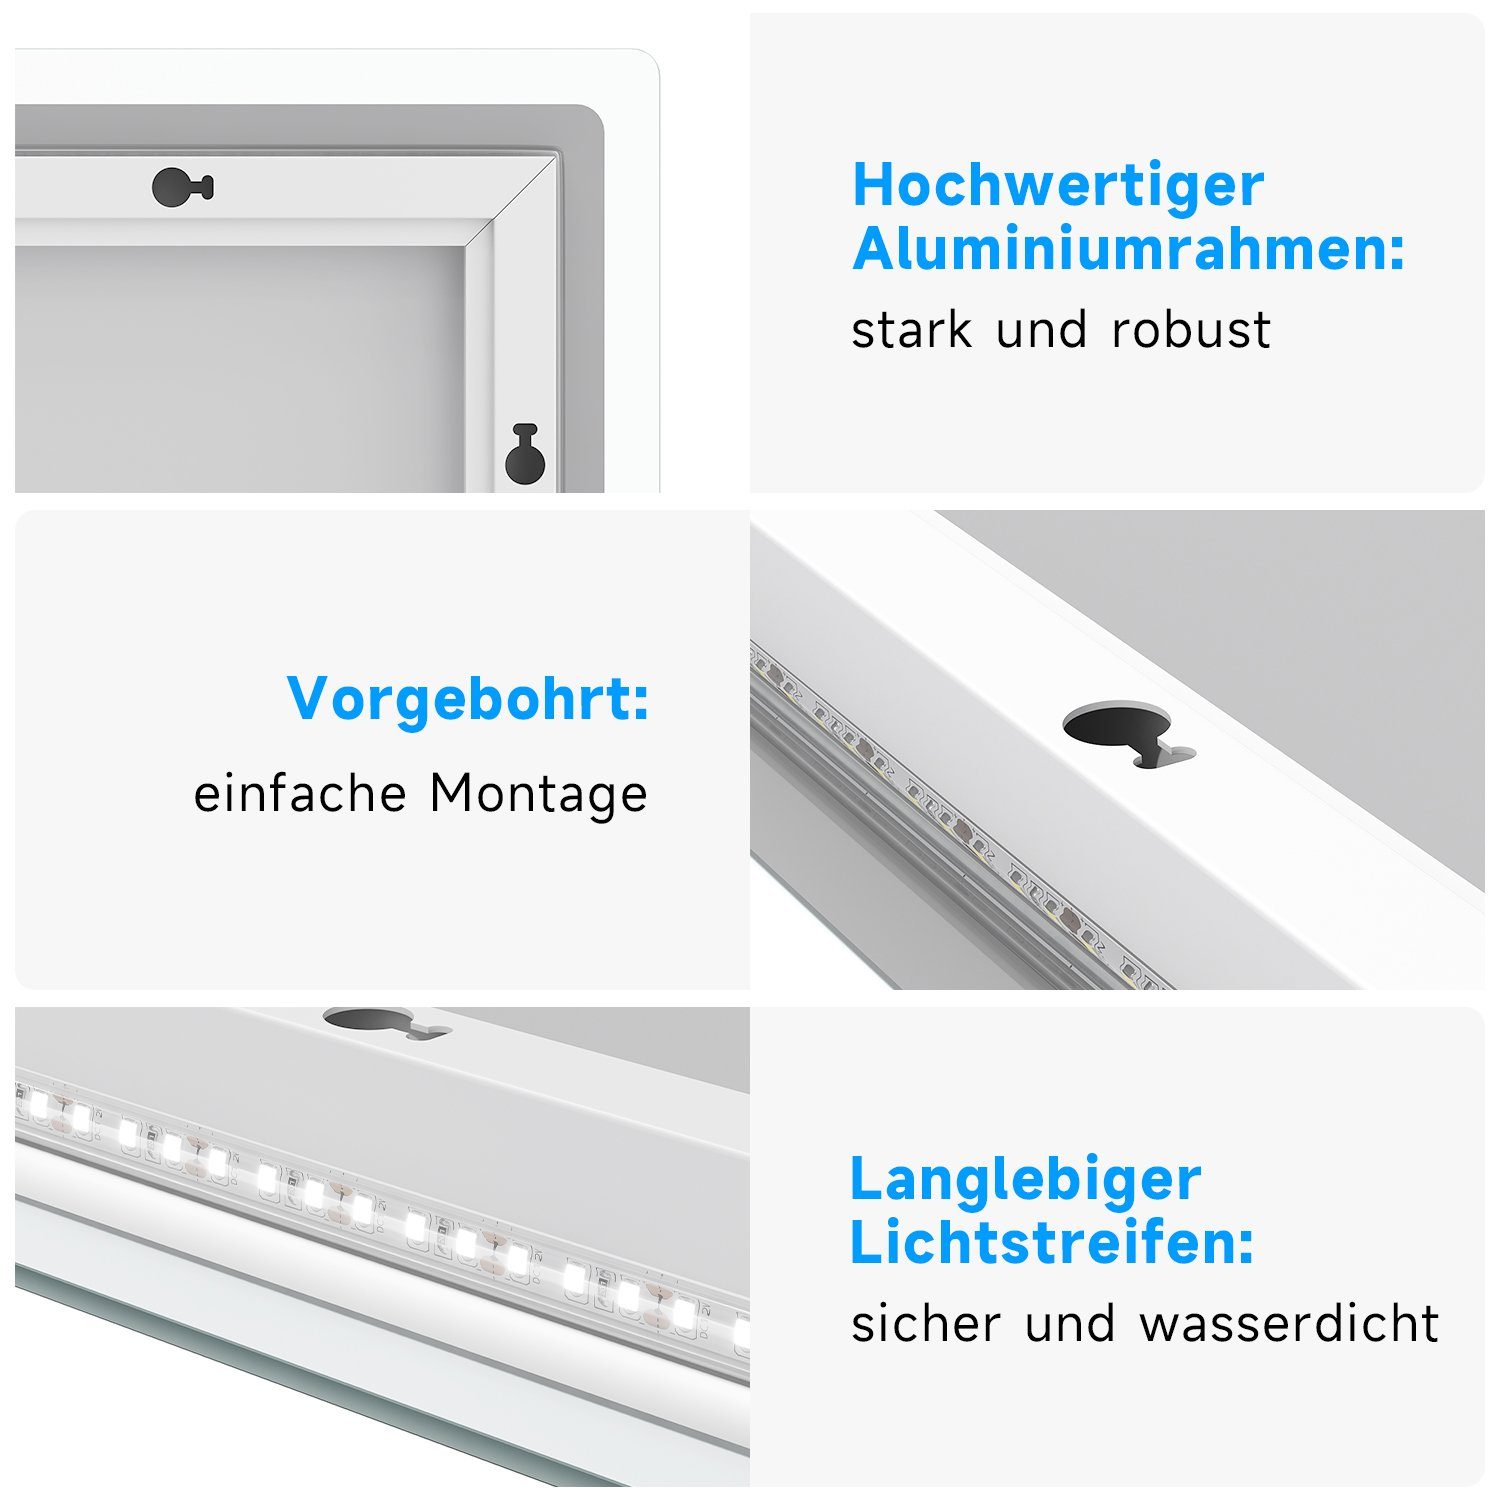 Beleuchtung, Anti-Beschlag-Funktion, Badspiegel LED-Anzeige Bluetooth-Lautsprecher, x 120 SONNI 70, mit